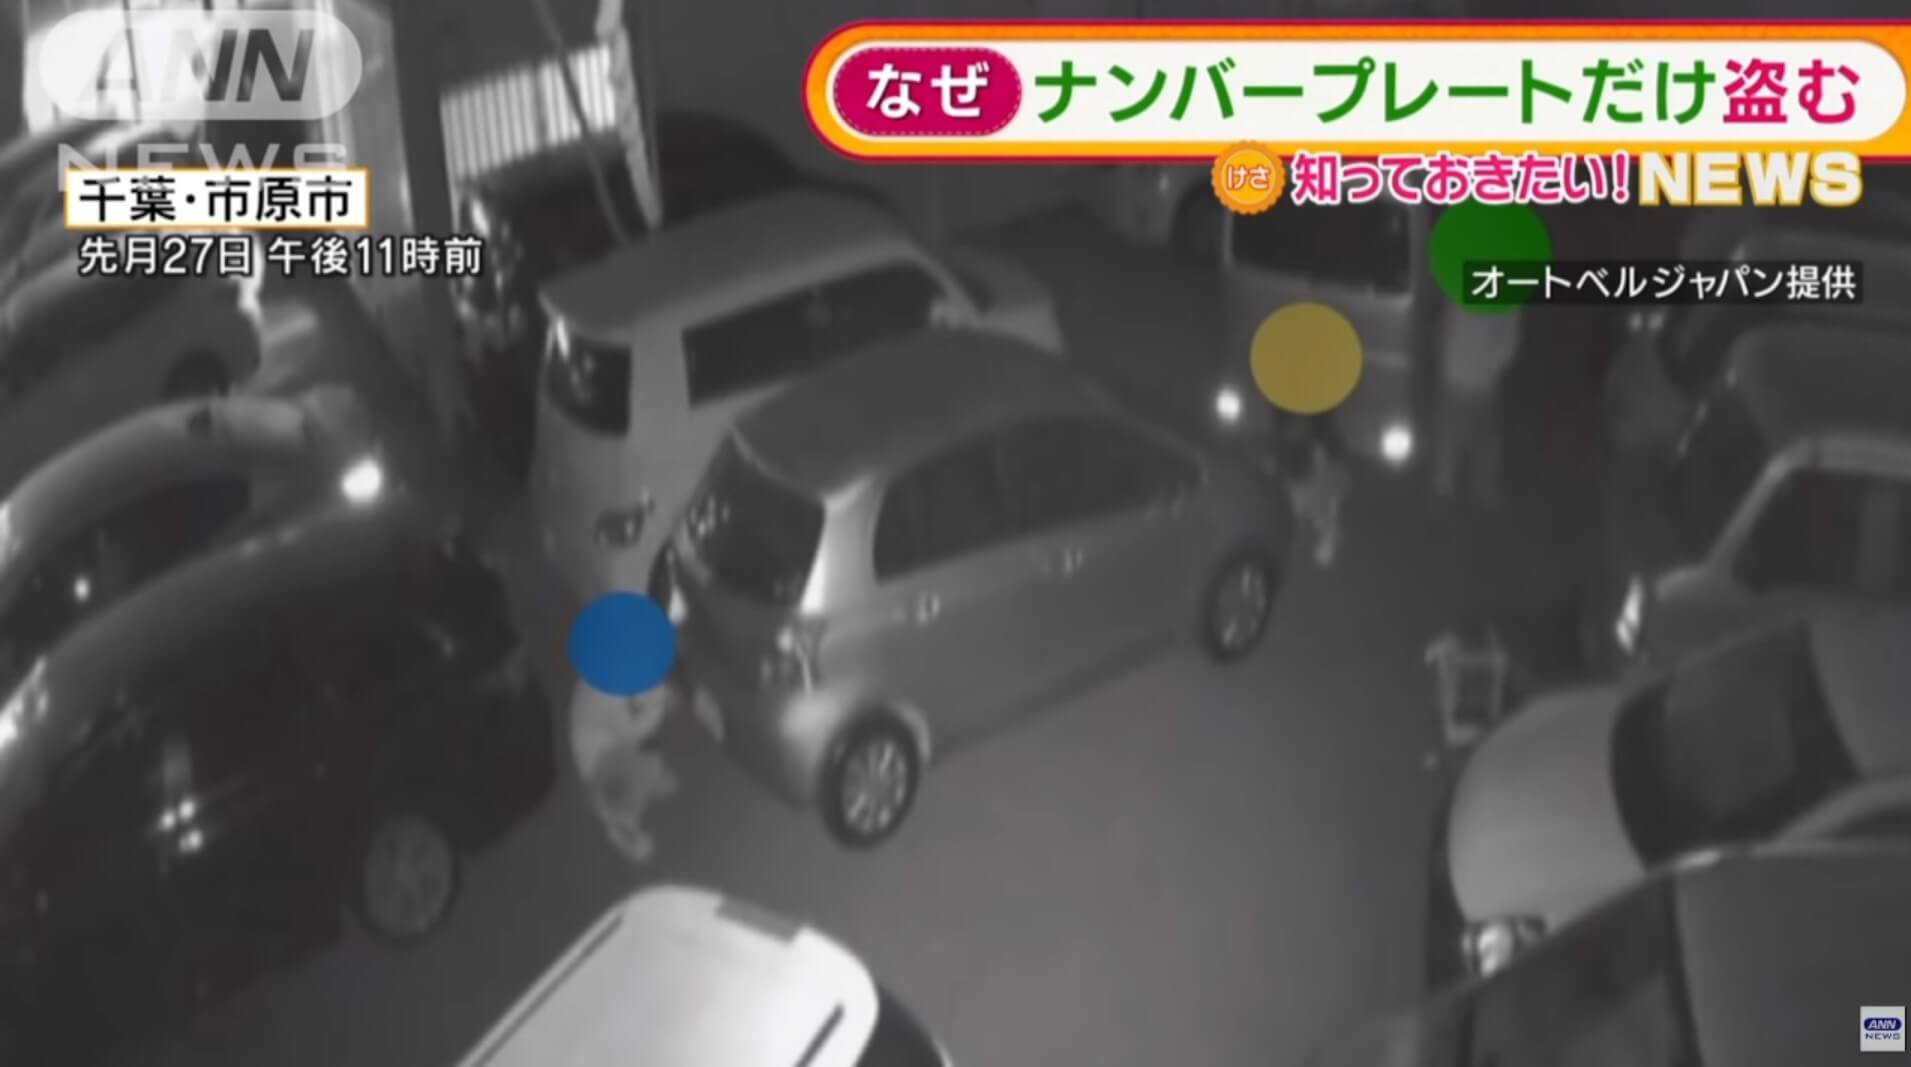 Ladrões de placas de carro atacam no Japão